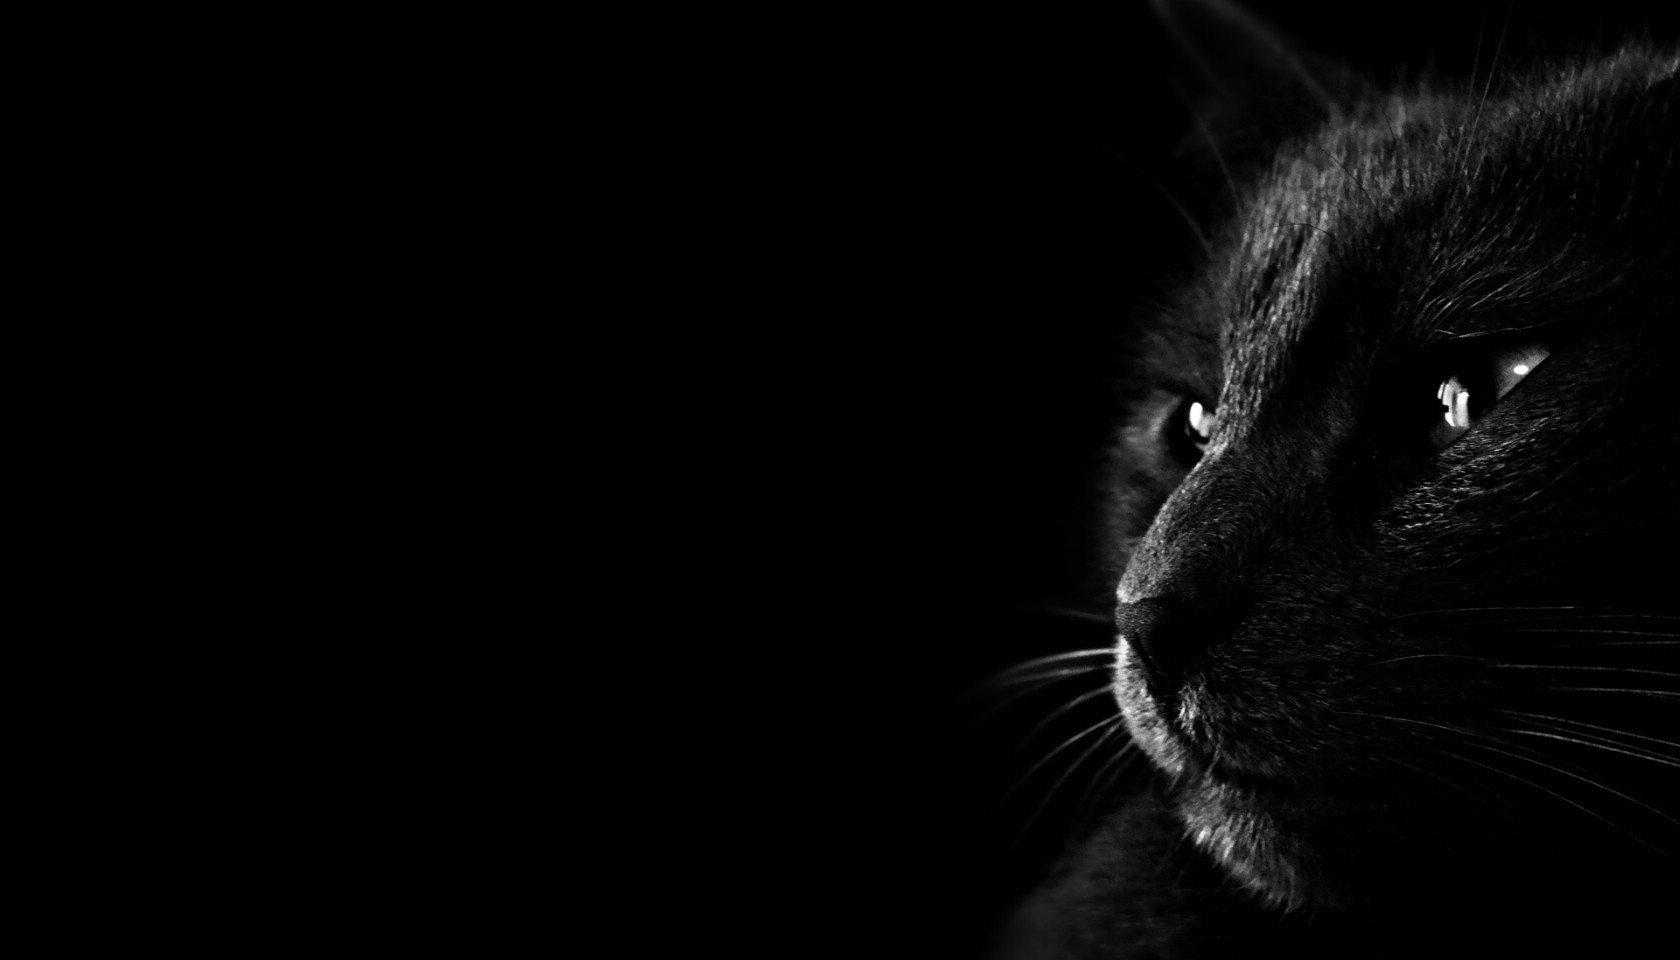 壁纸1680x960黑猫 多分辨率 壁纸71920x1080壁纸 黑猫 （多分辨率）壁纸 黑猫 （多分辨率）图片 黑猫 （多分辨率）素材 精选壁纸 精选图库 精选图片素材桌面壁纸